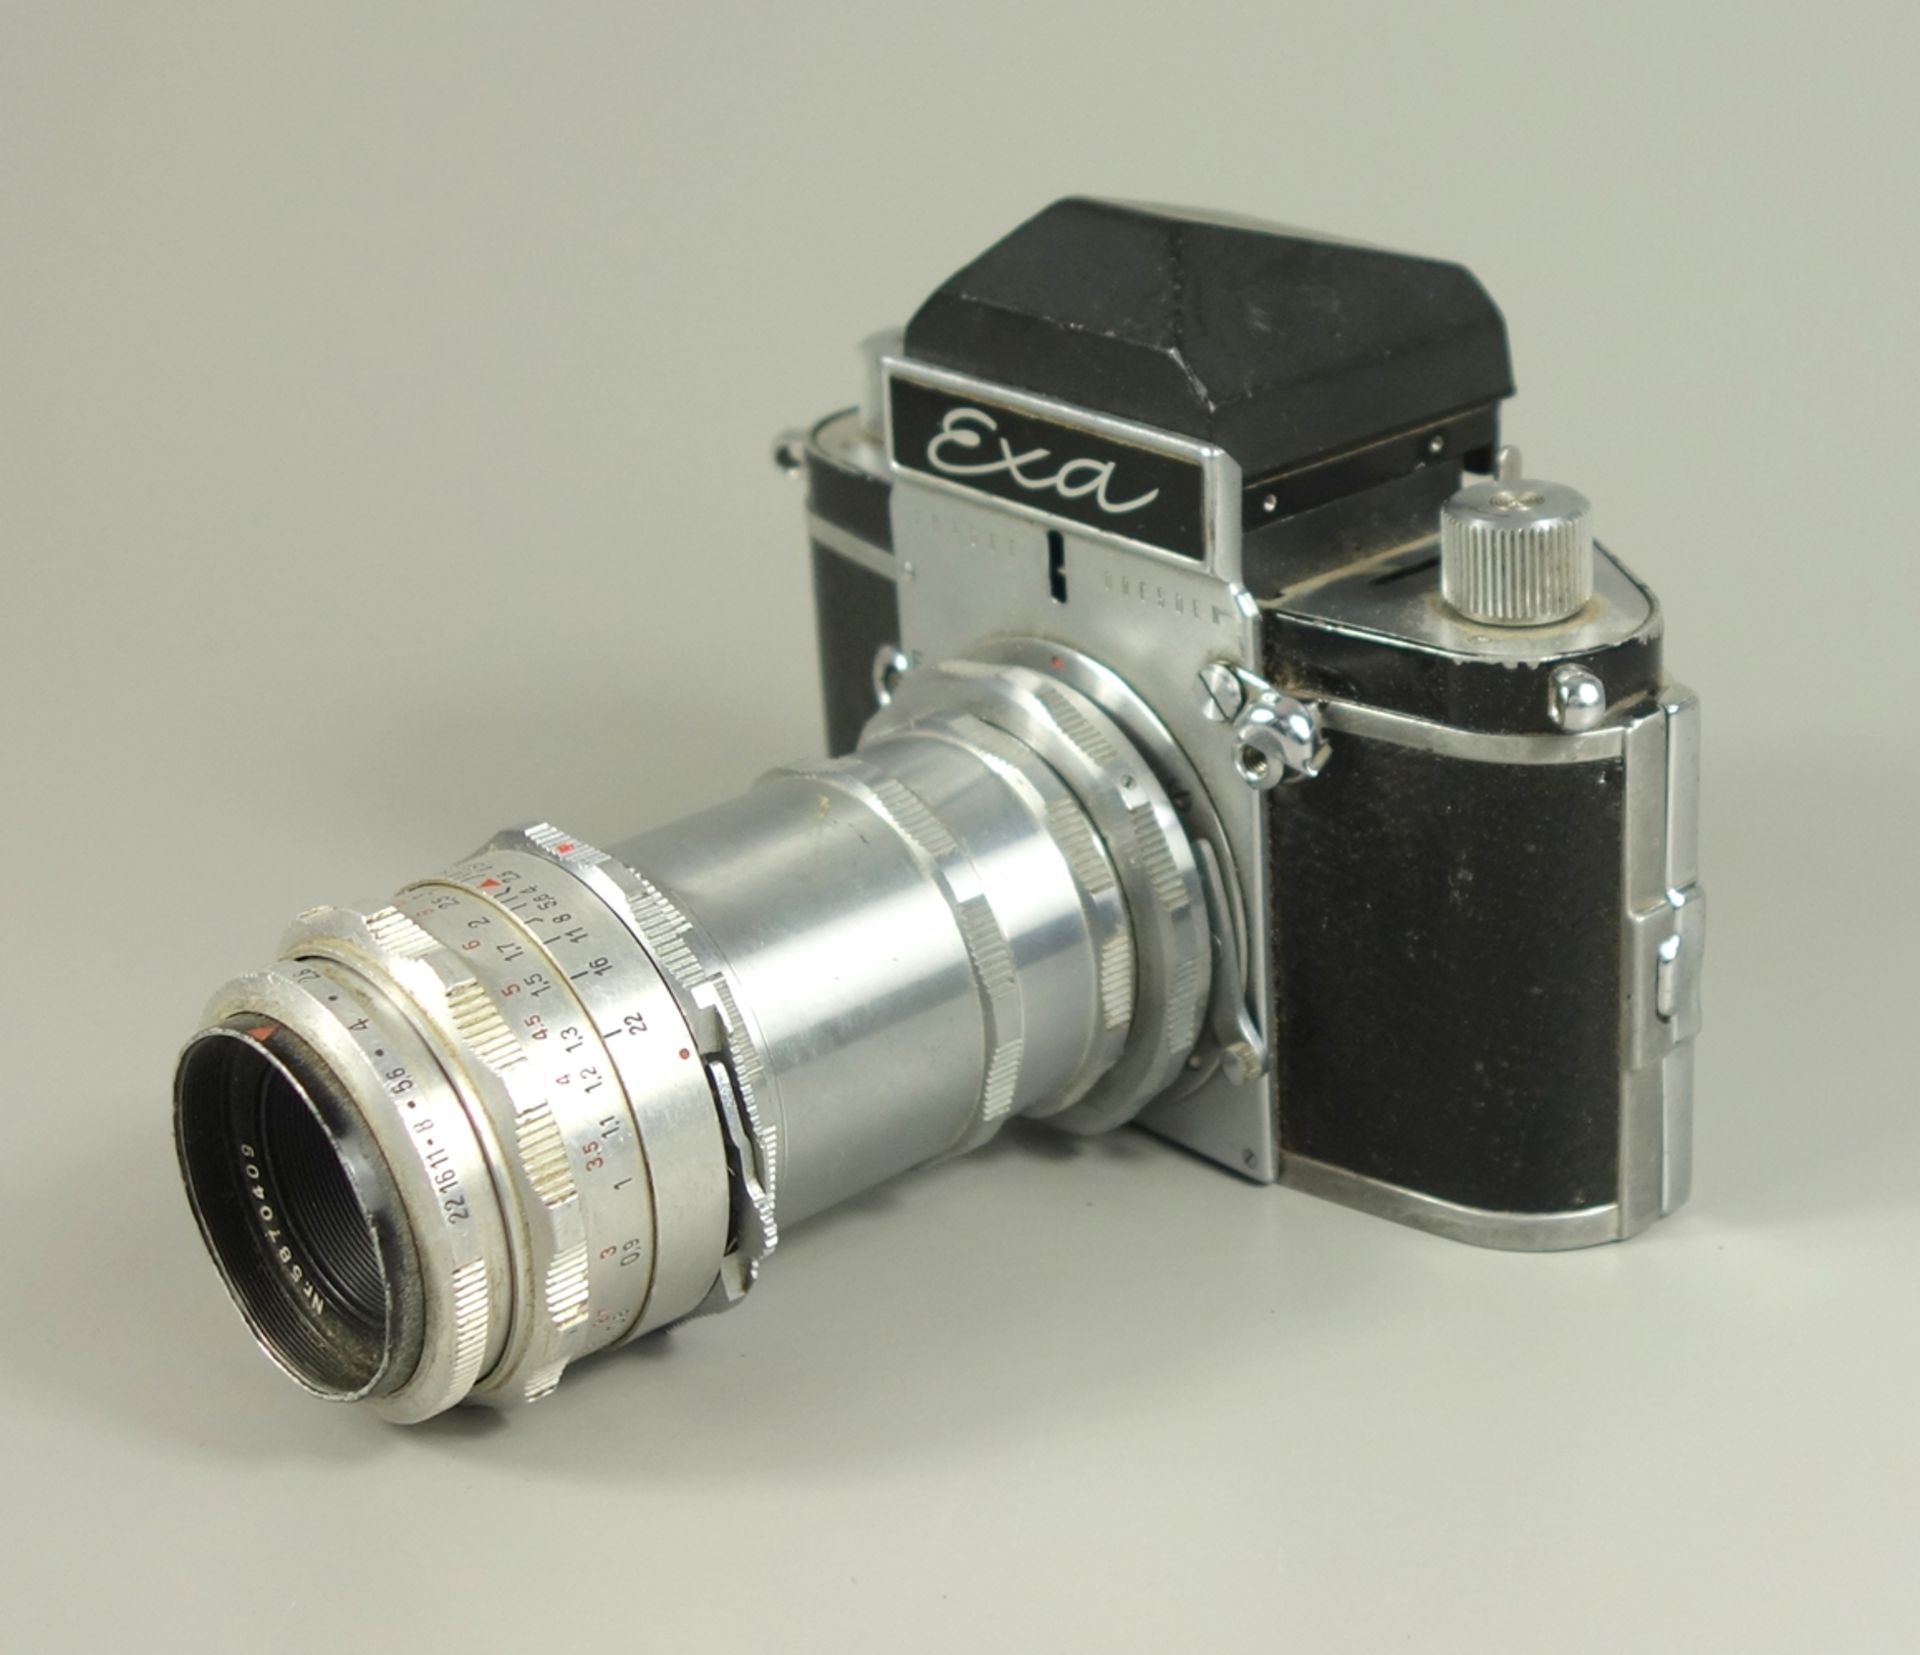 Kamera Exa IHAGEE Dresden mit Objektiv, um 1960, Objektiv Jena T1:2,8 F=50, Nr.5870409, Fkt.nicht